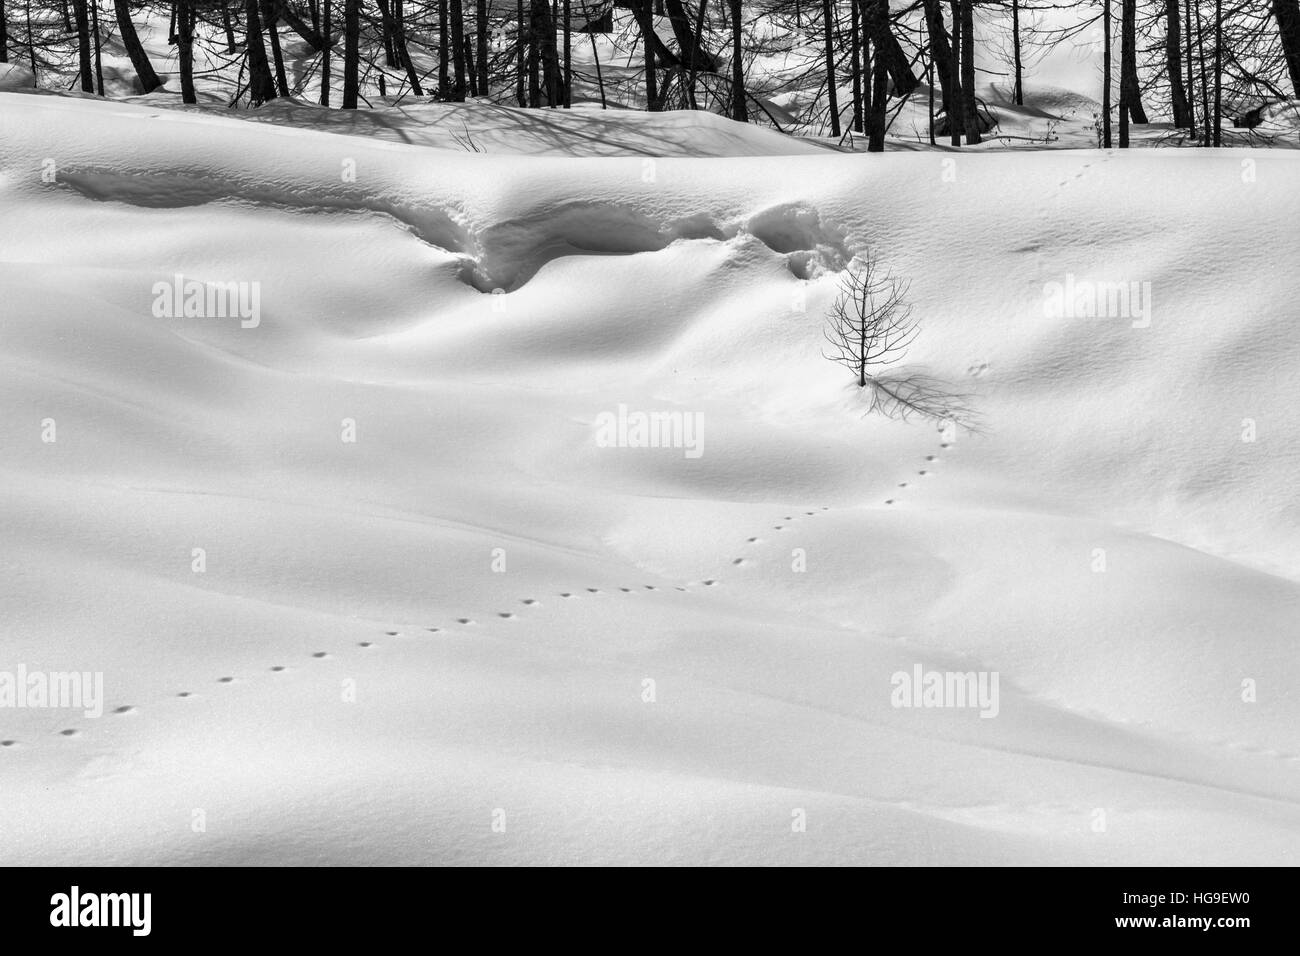 Montagne en hiver. Les voies de l'animal sauvage sur la neige dans une forêt de montagne. Photo en noir et blanc. Banque D'Images